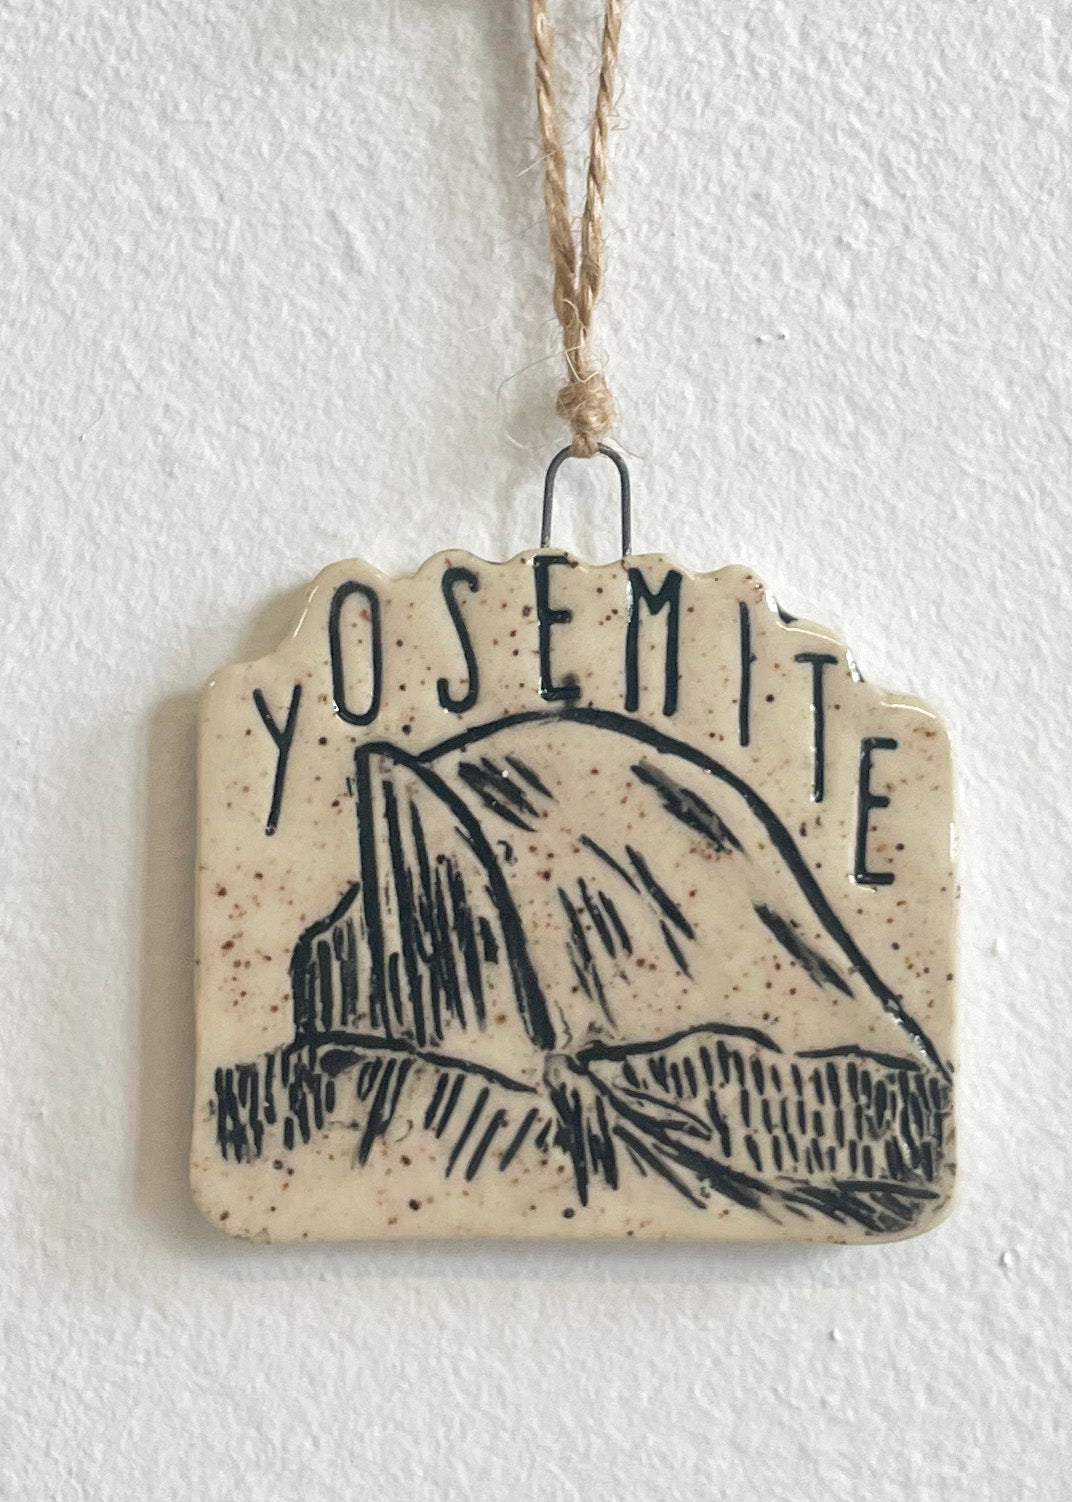 Yosemite Half Dome Ornament, No 1